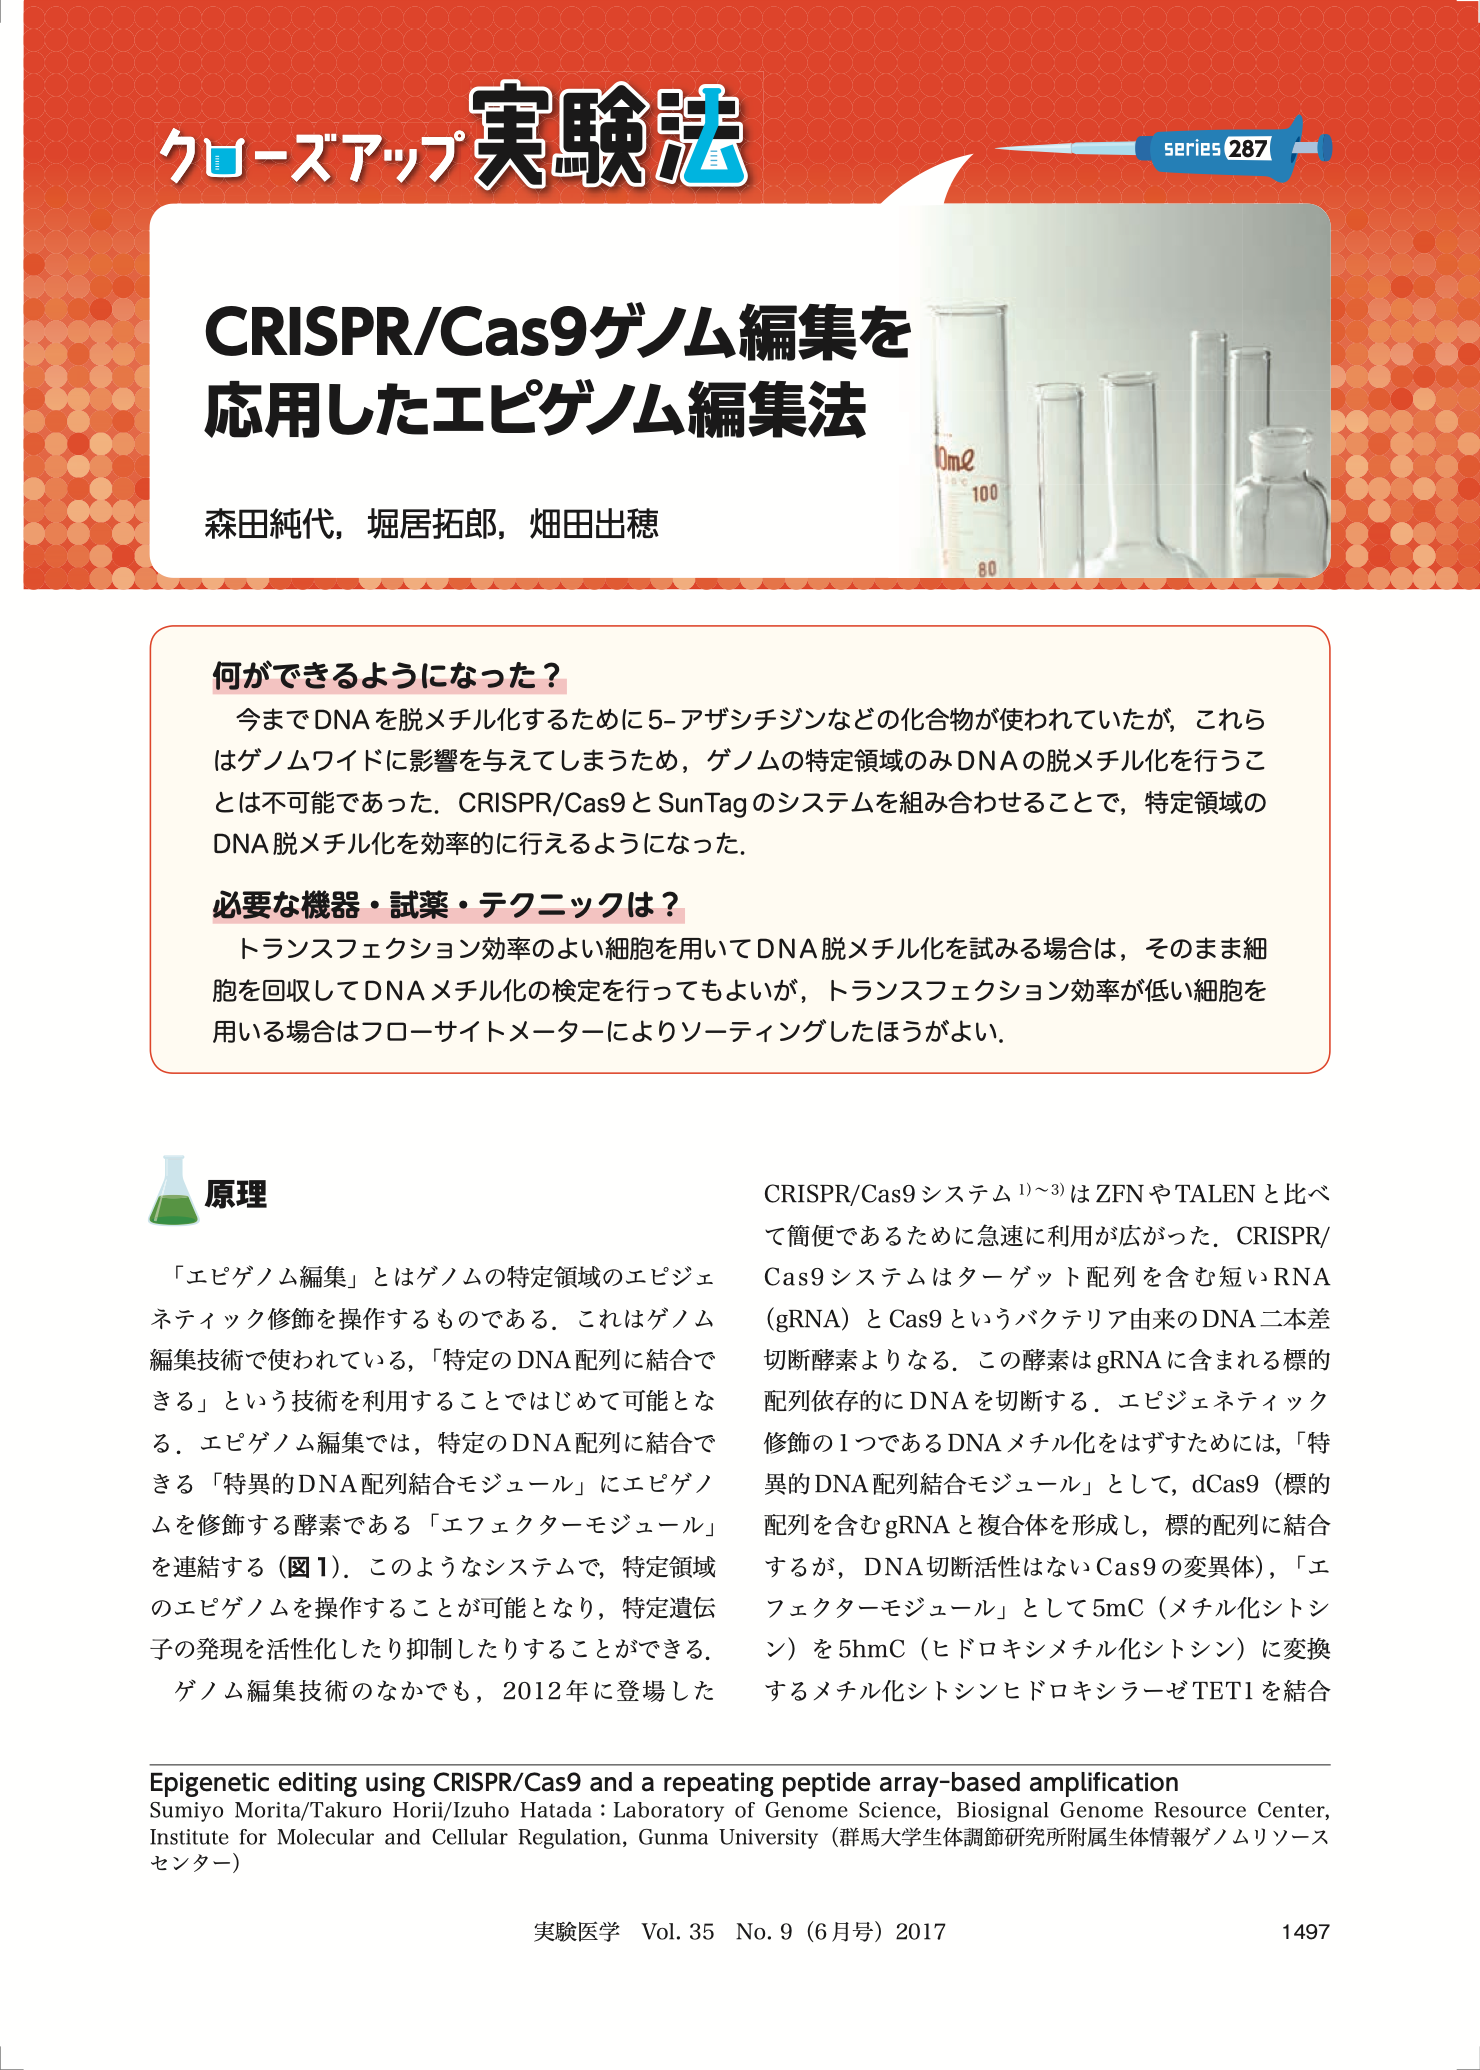 CRISPR/Cas9ゲノム編集を応用したエピゲノム編集法